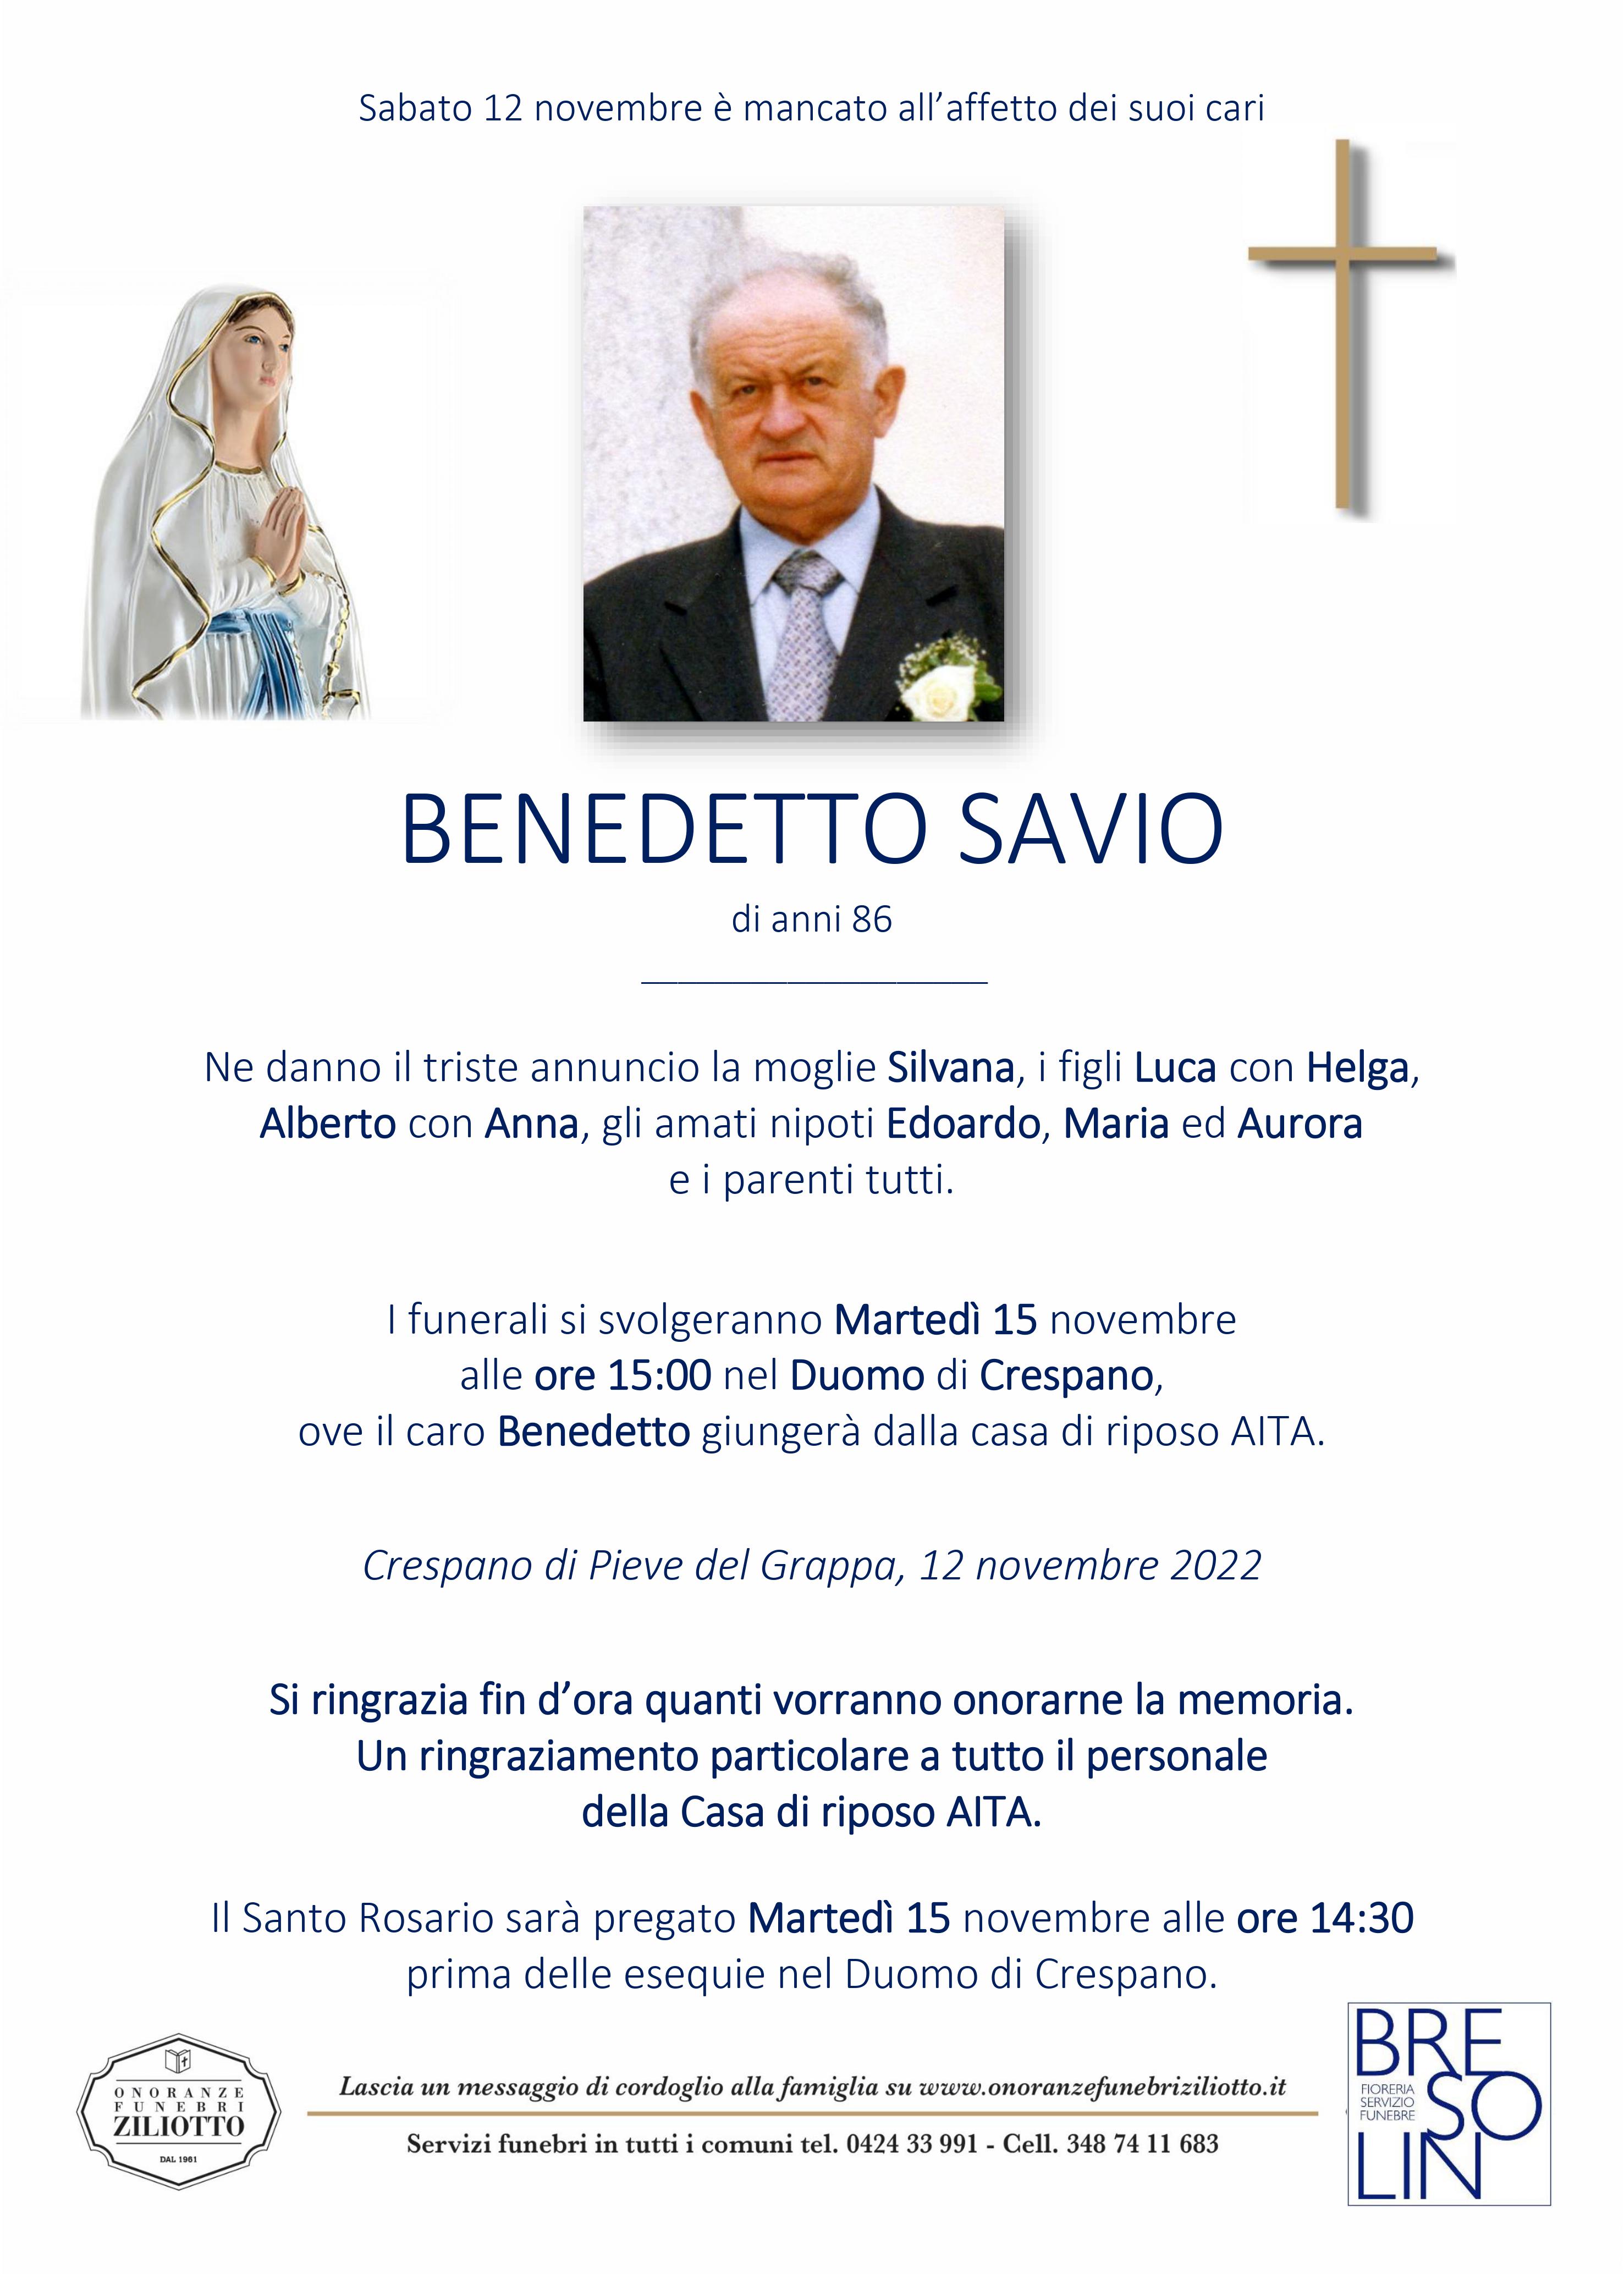 Benedetto Savio - 86 anni - Pieve del Grappa